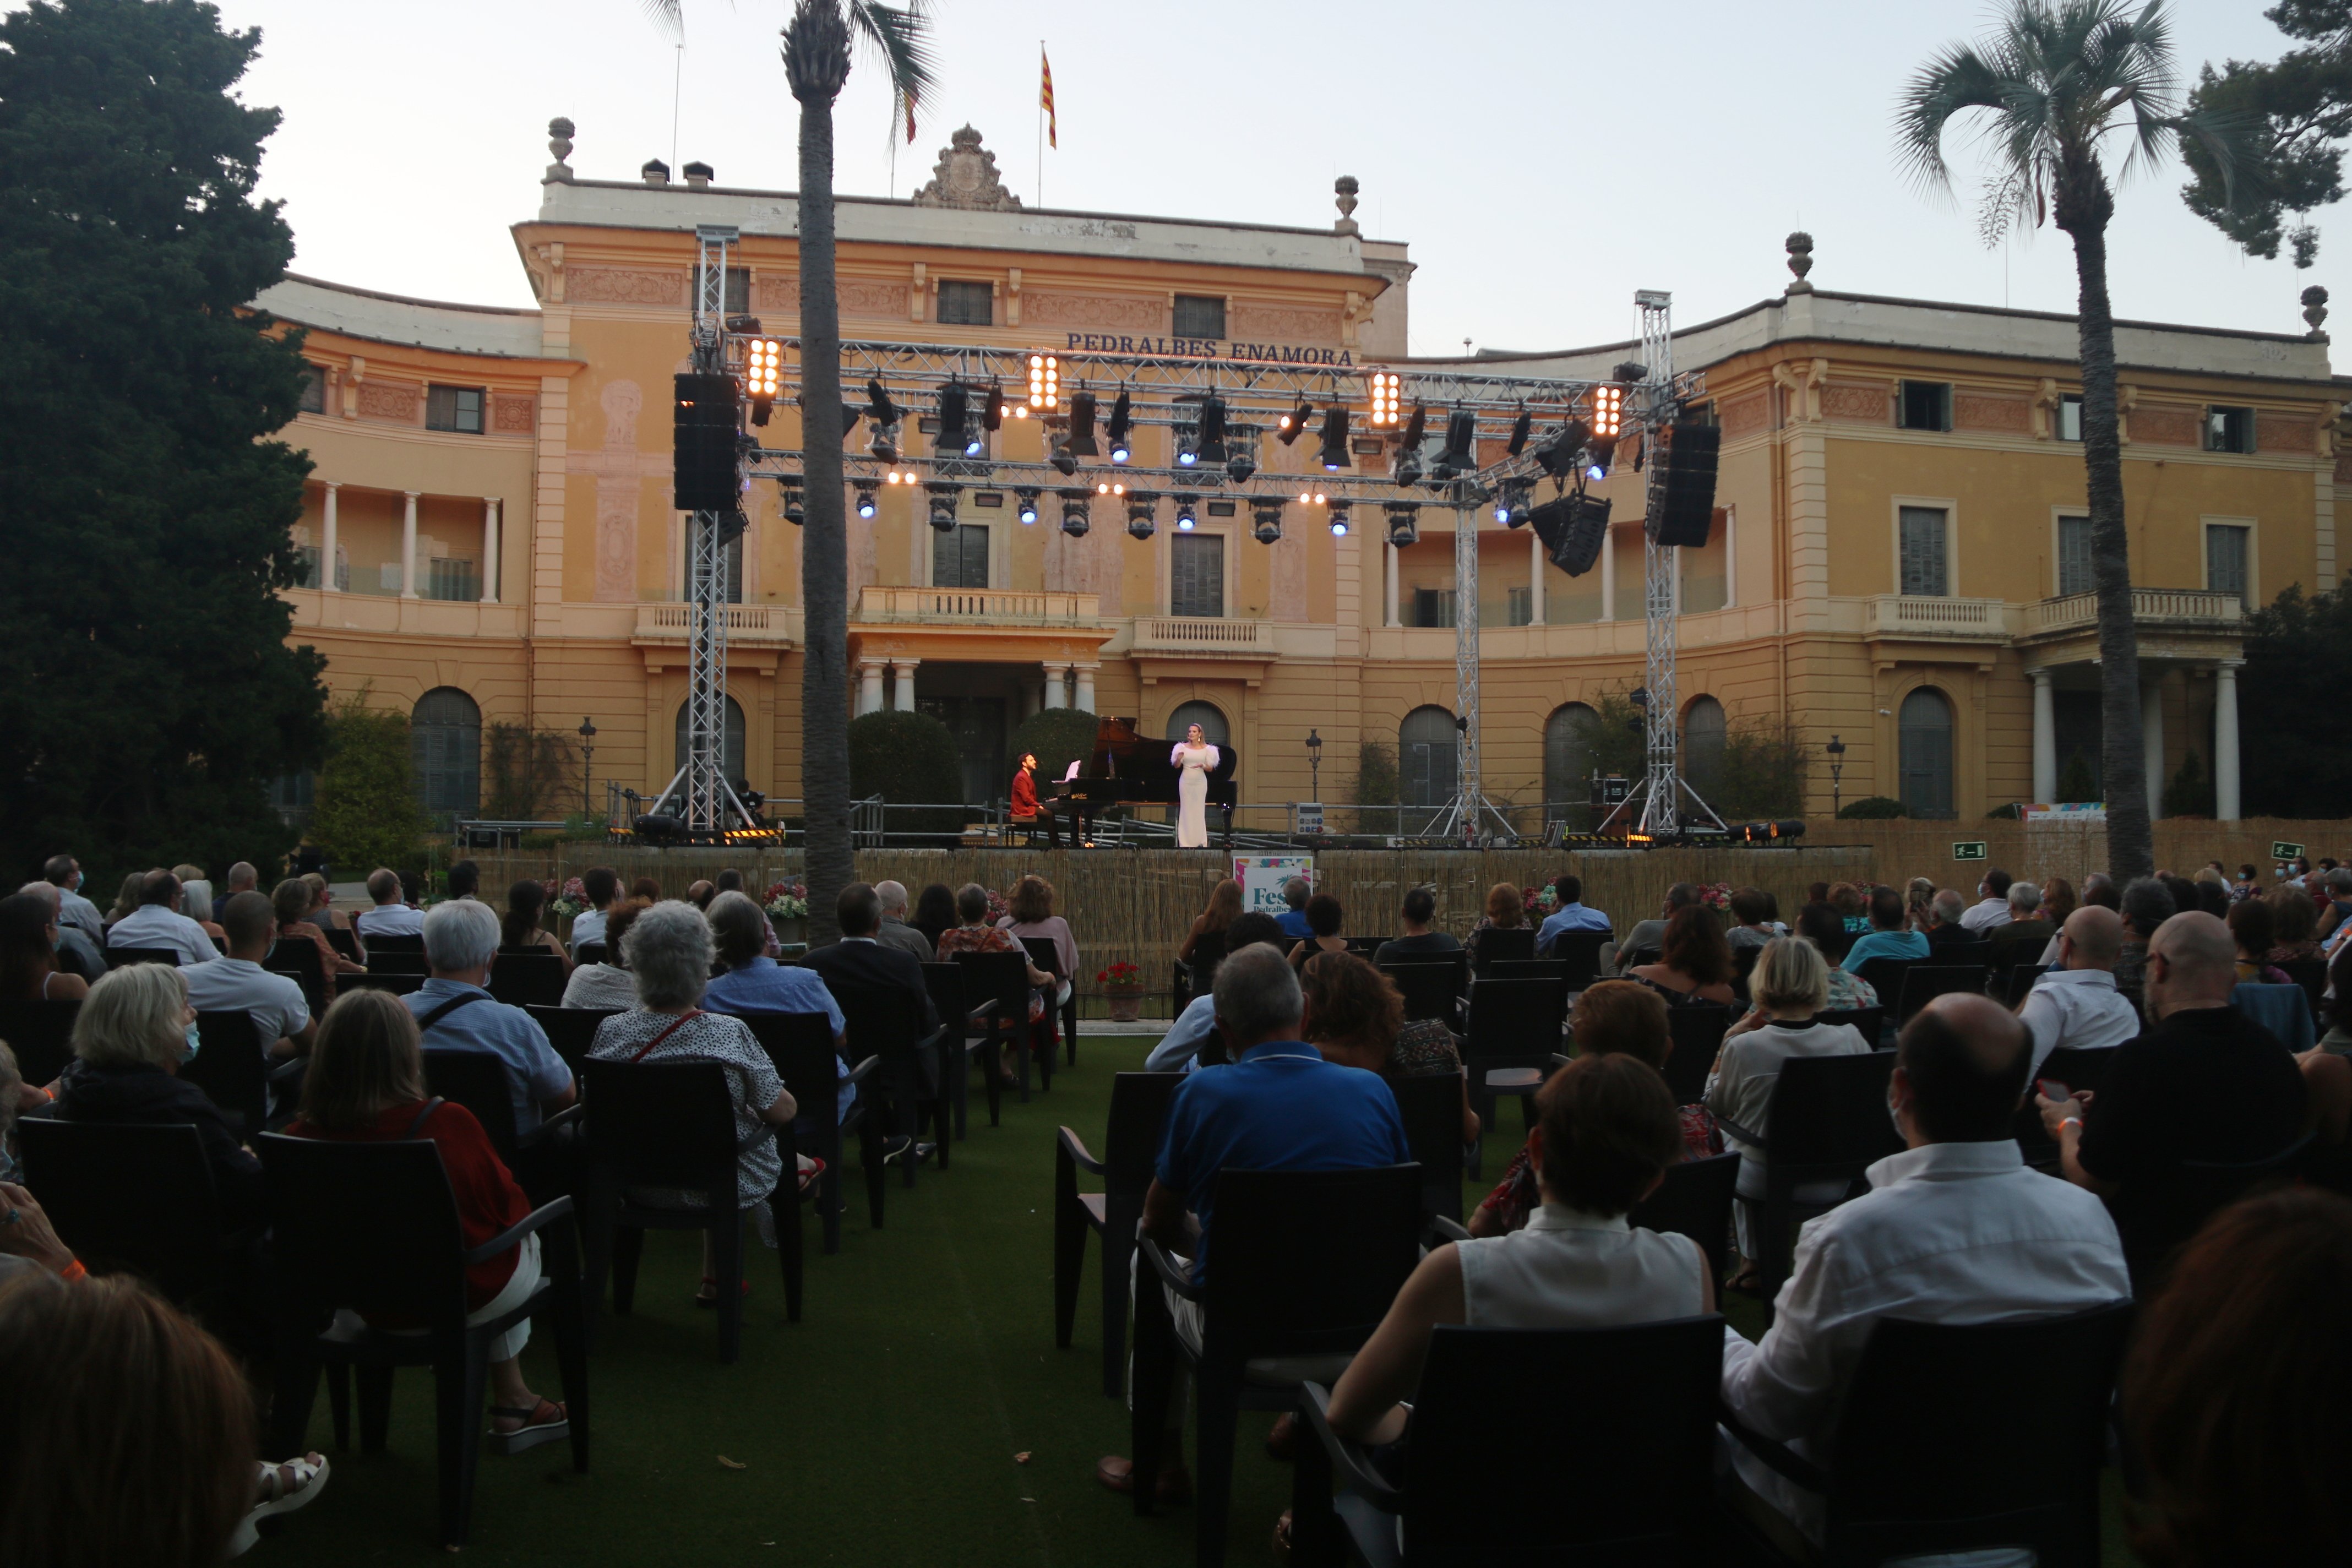 Sale a concurso el espacio del jardín del Palau de Pedralbes para hacer un festival